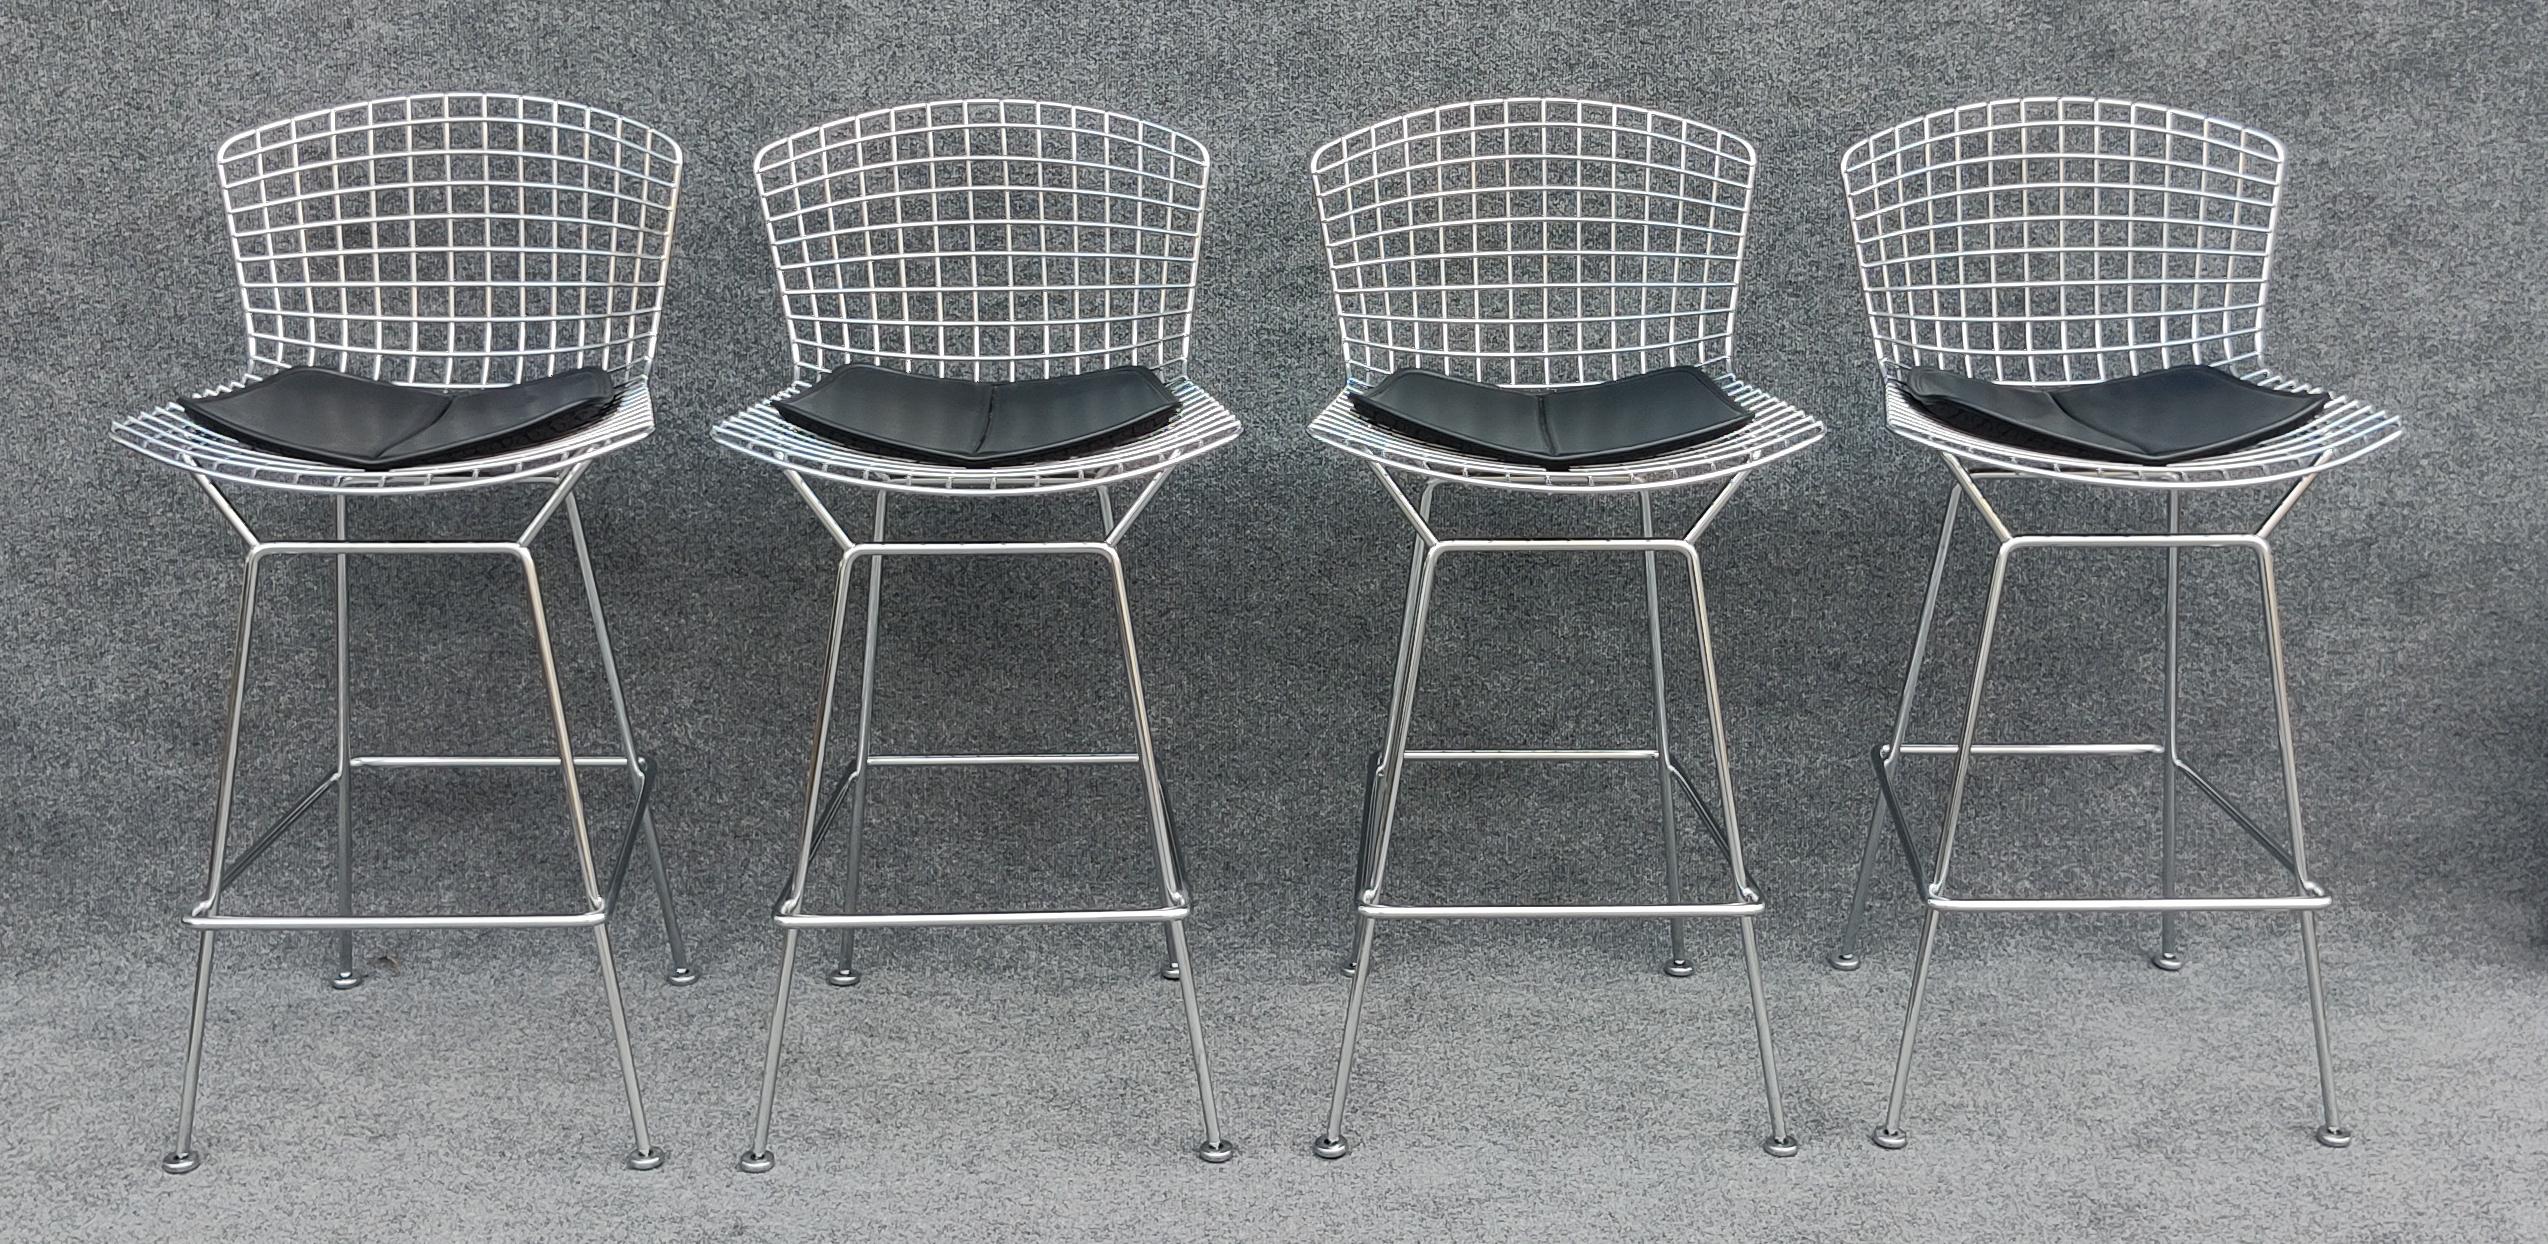 Conçue au début des années 1950 par le génial designer débutant Harry Bertoia, cette chaise fait aujourd'hui partie d'une ligne entière produite par Knoll. Accompagnée par les chaises Diamond, Bird et bien d'autres de Bertoia, cette chaise